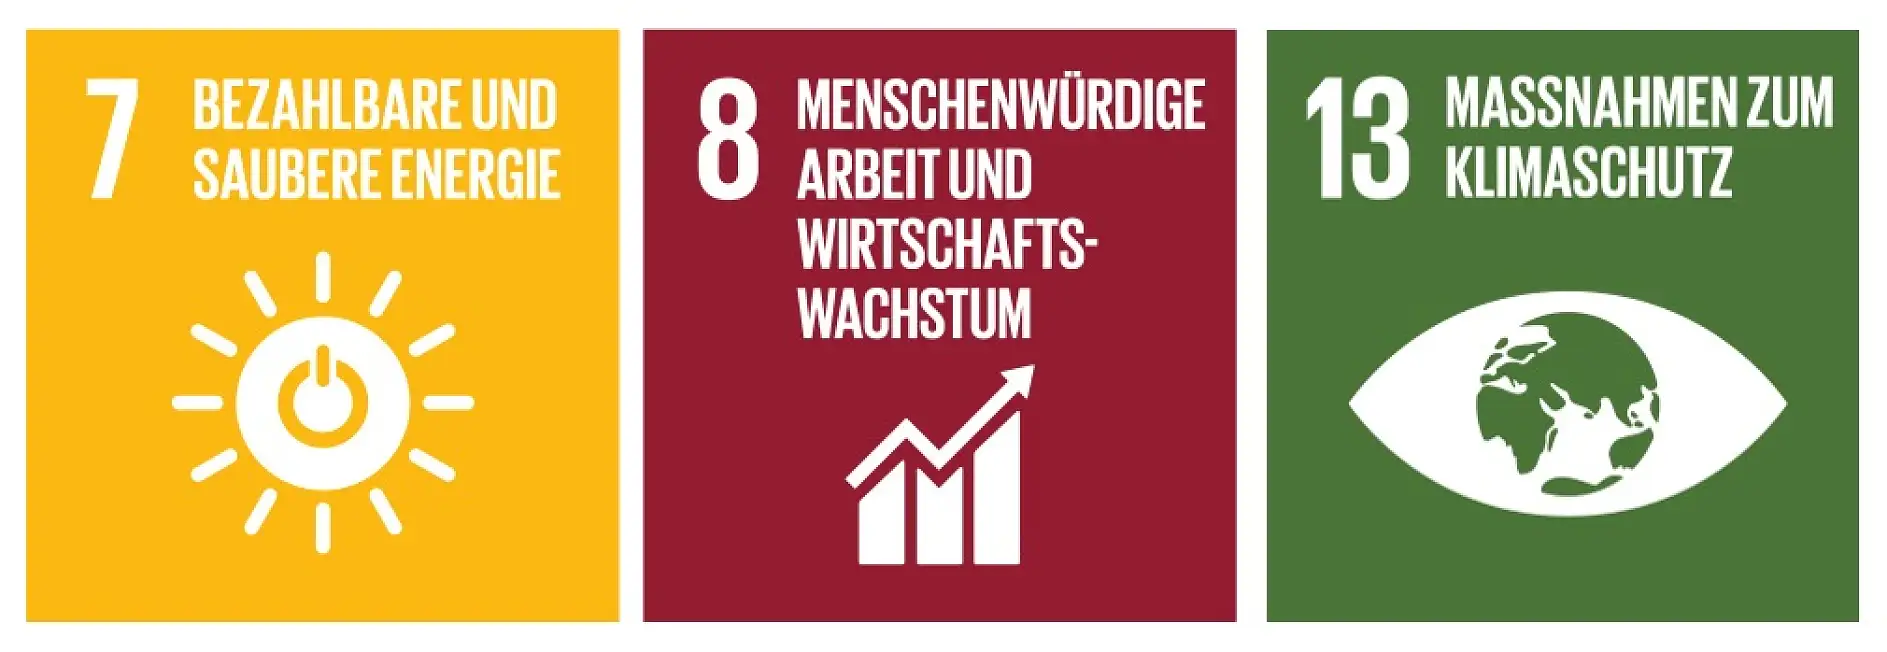 SDGs_Nachhaltigkeitsbericht_de